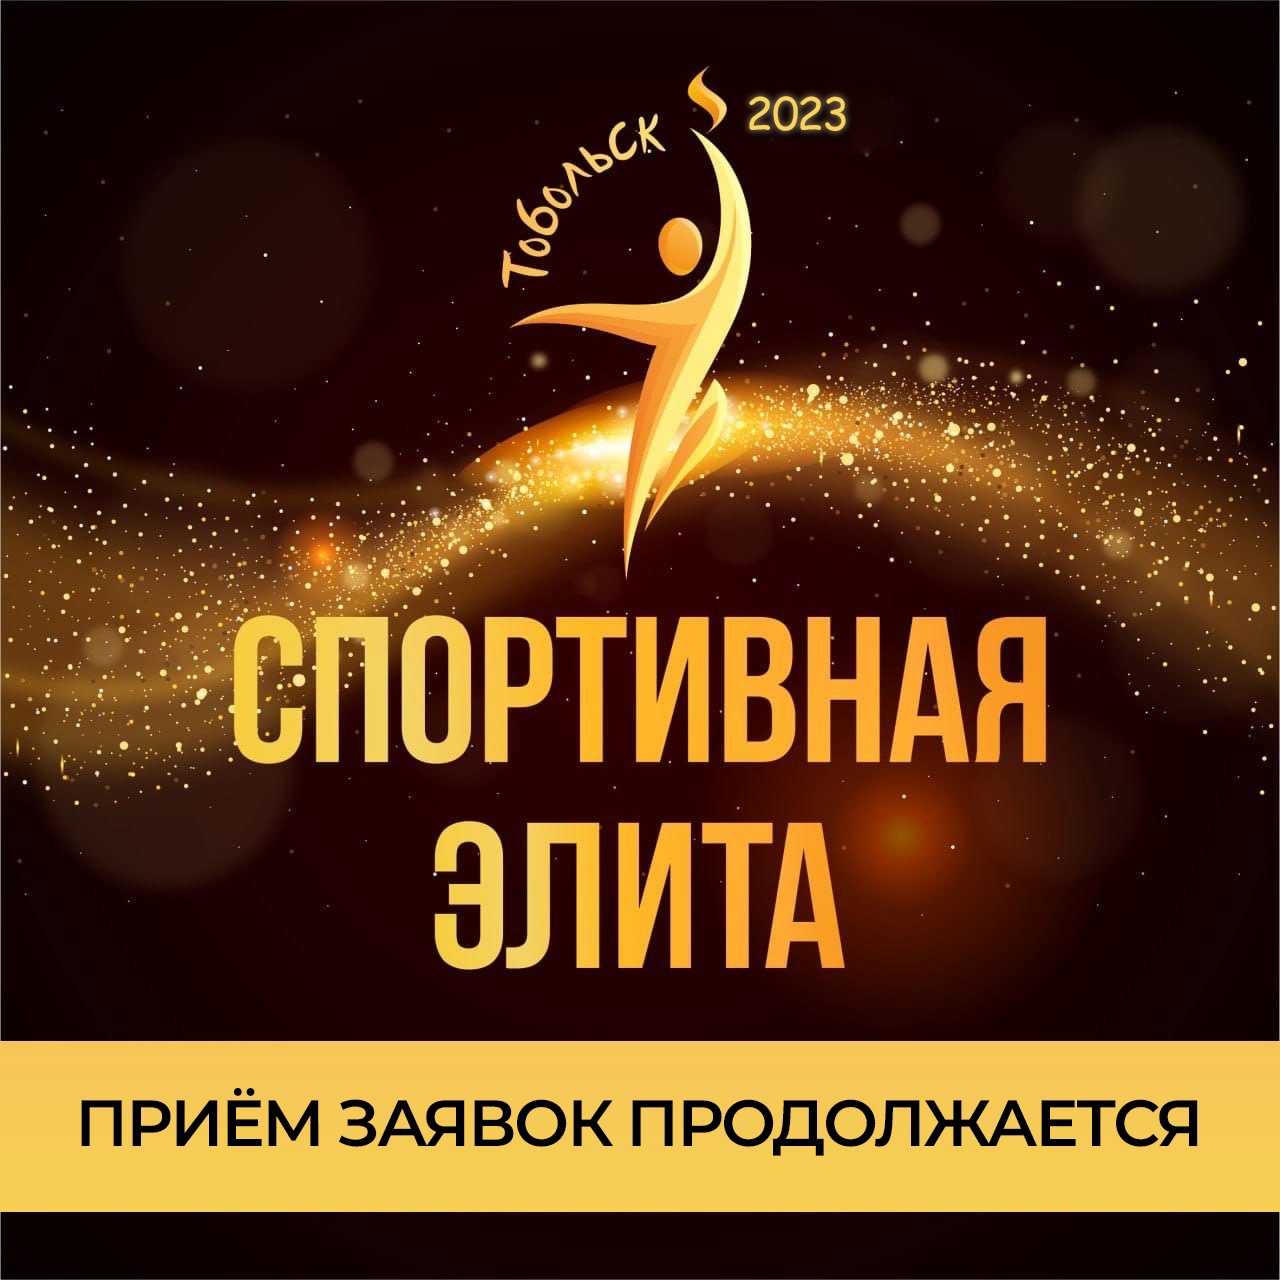 Продолжается приём заявок на участие в городском конкурсе "Спортивная элита 2023"!